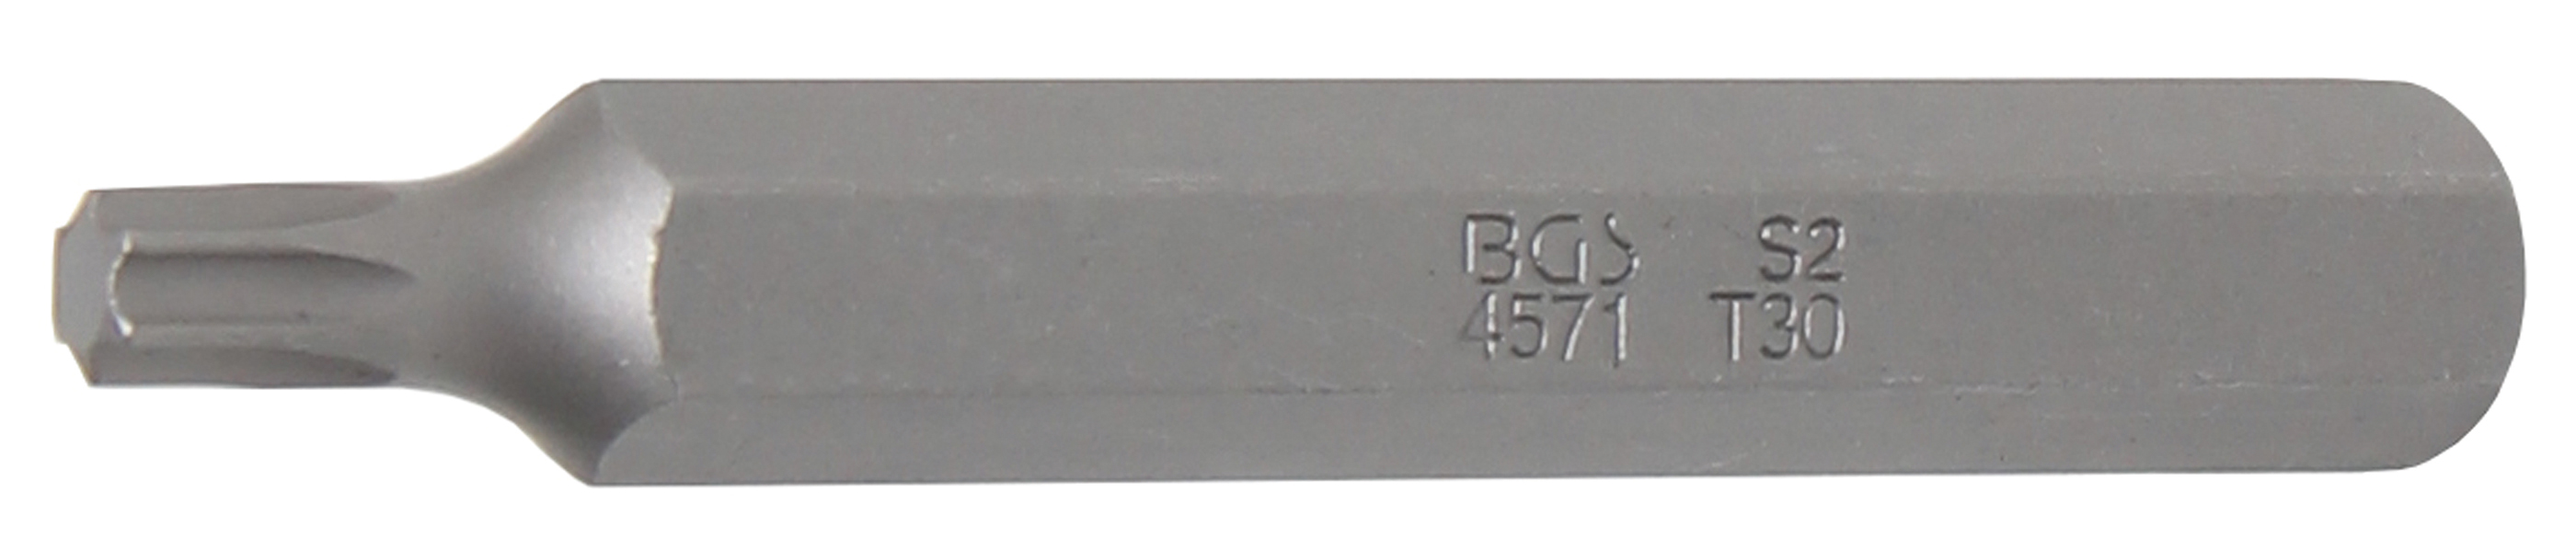 BGS 4571 Bit Torx T30, lungime 75 mm, antrenare 10mm (3/8")